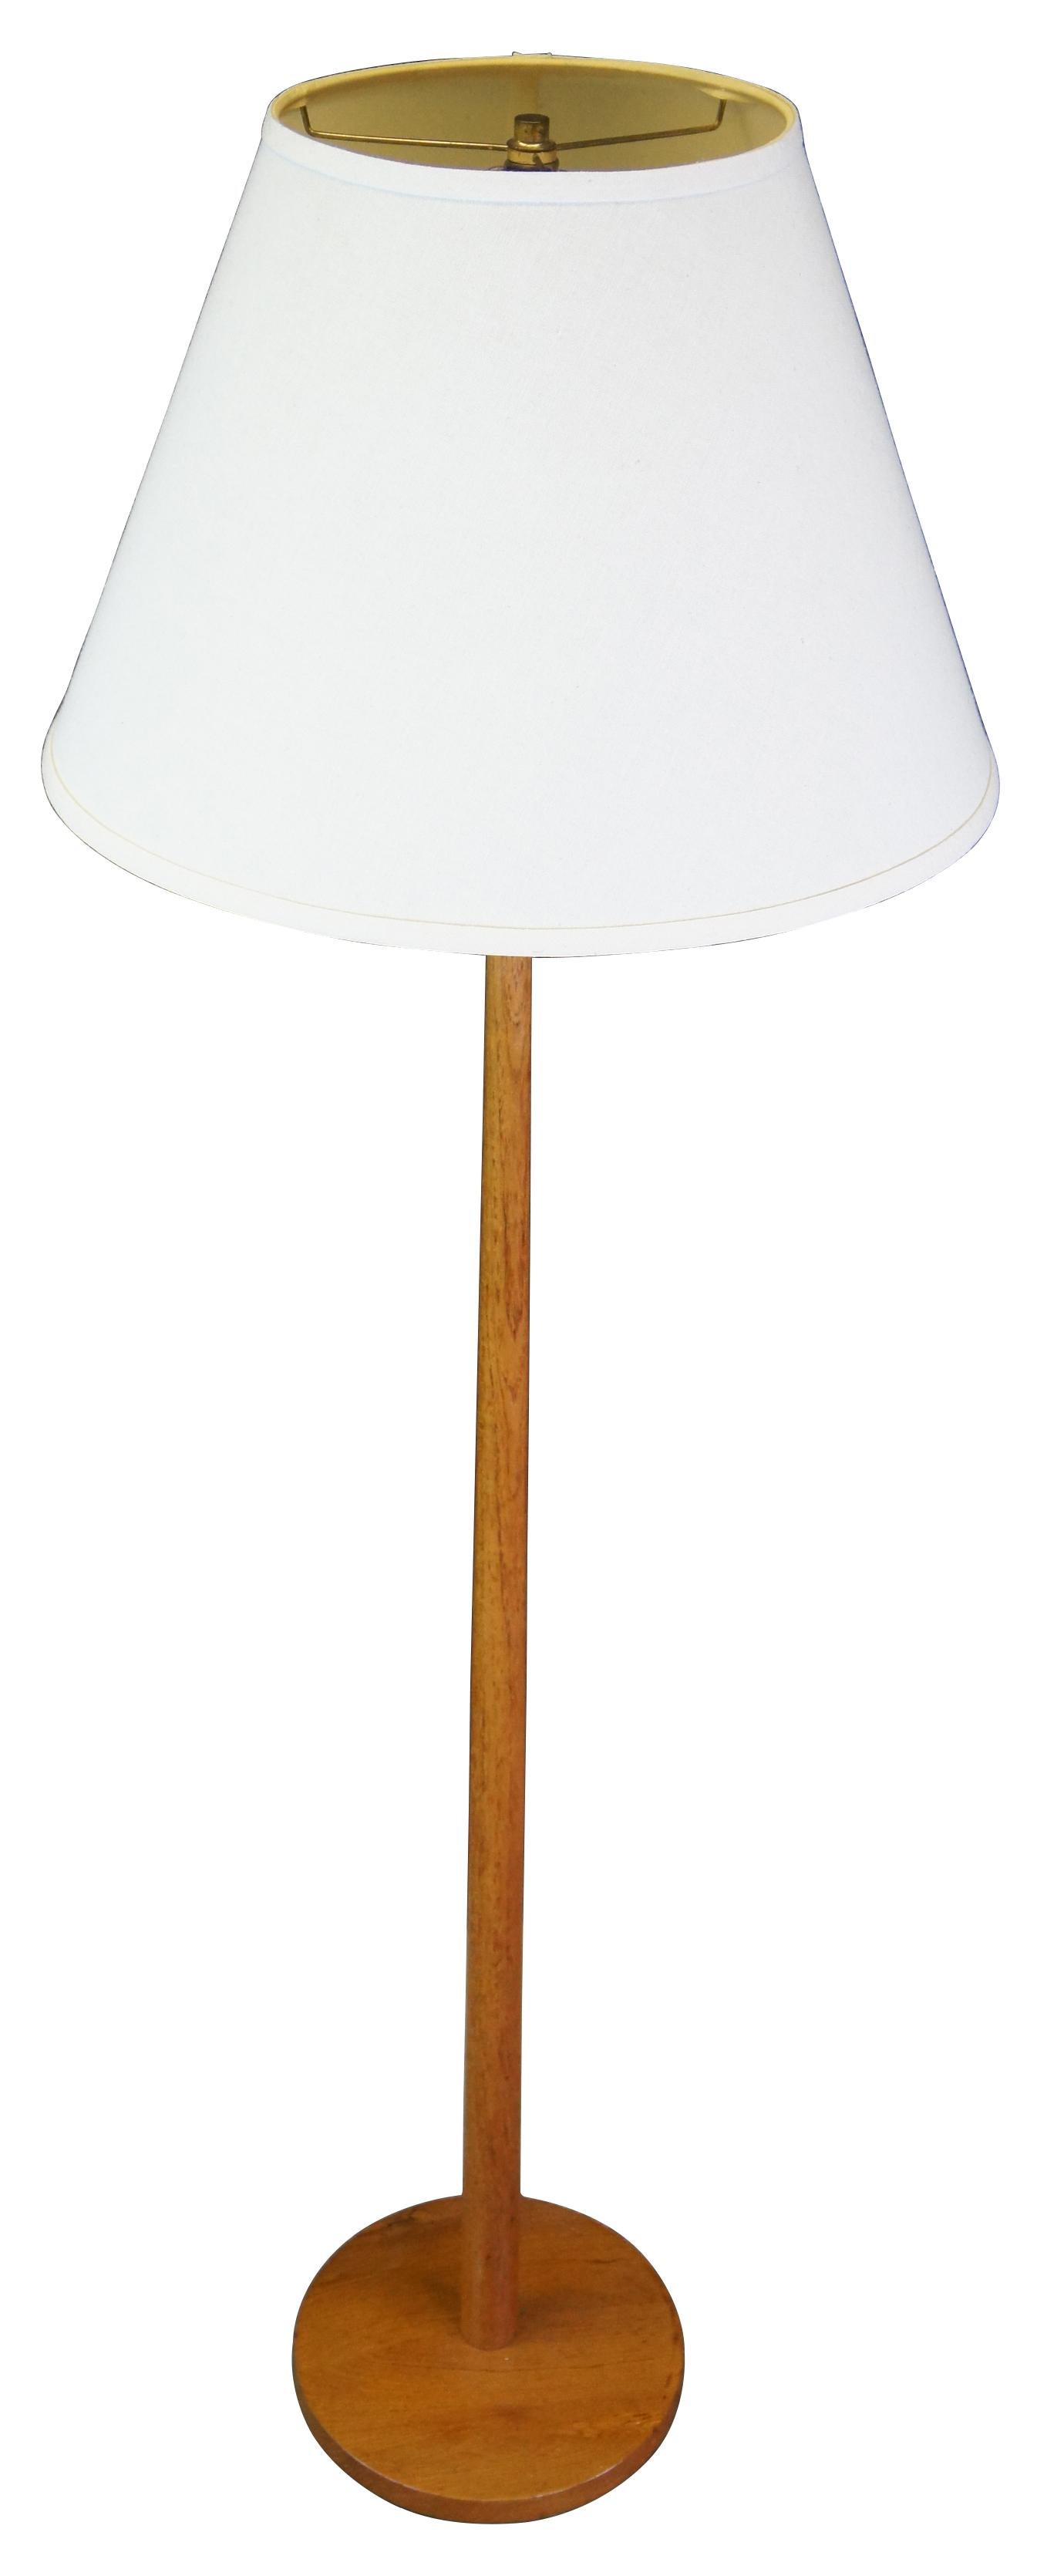 Lampadaire moderne suédois minimaliste, vers les années 1960. Fabriqué en Suède pour George Kovacs. Un design épuré avec un bois riche et un abat-jour blanc. Mesures : 56